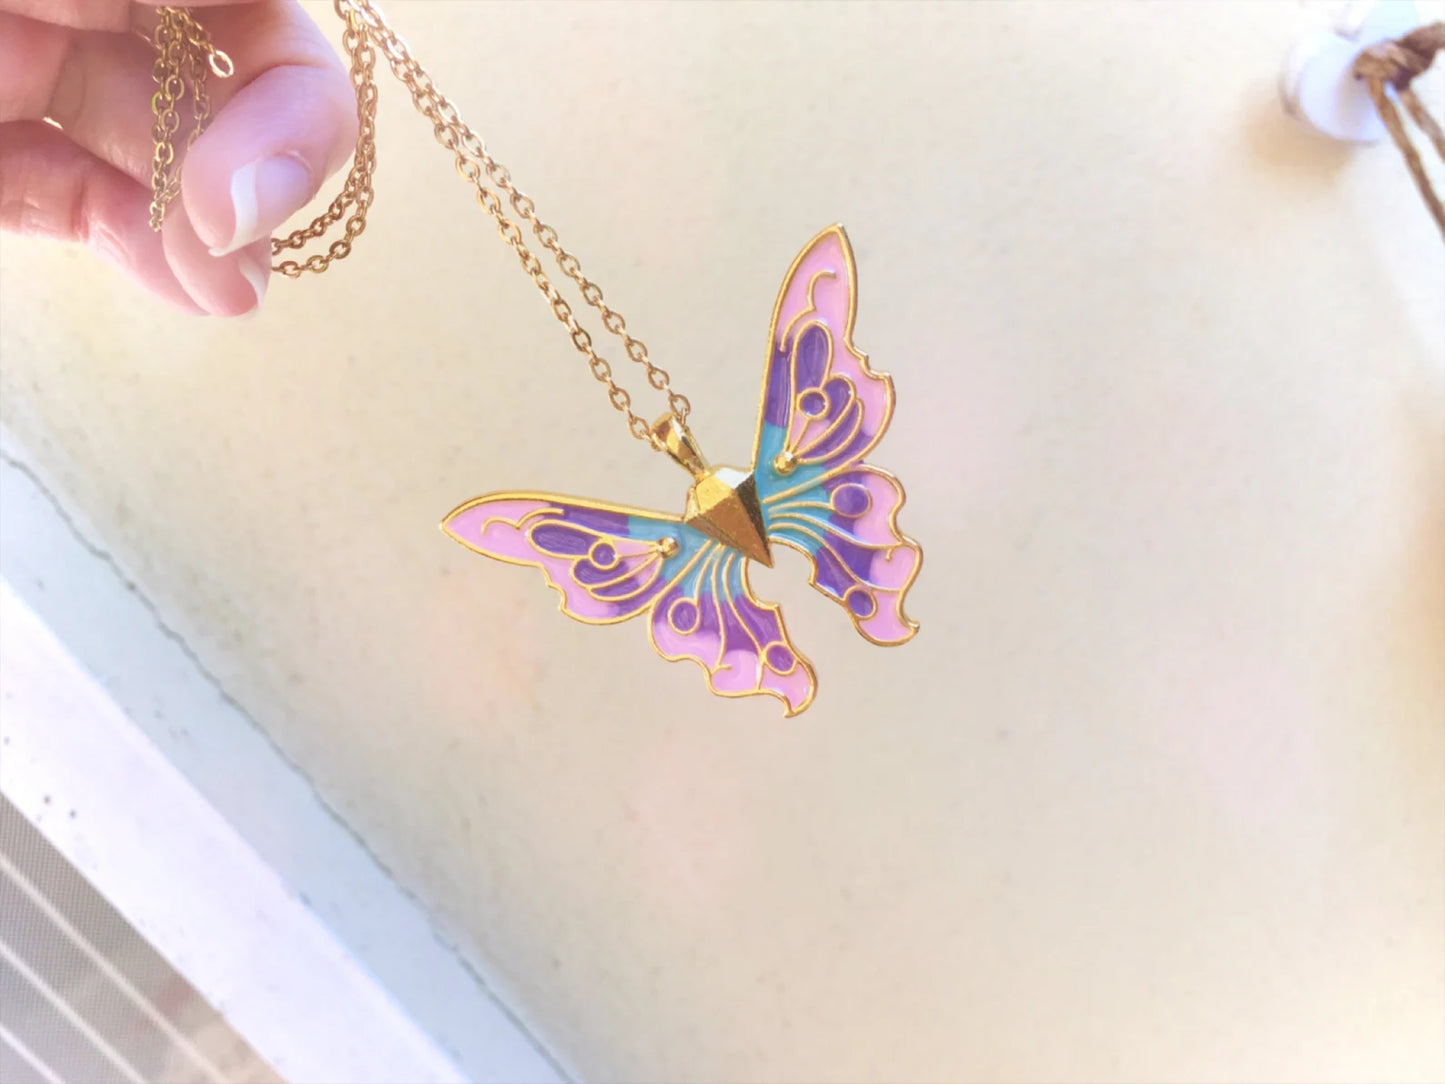 Fairytopia Elina Mariposa Fairy Butterfly Necklace - Large Version